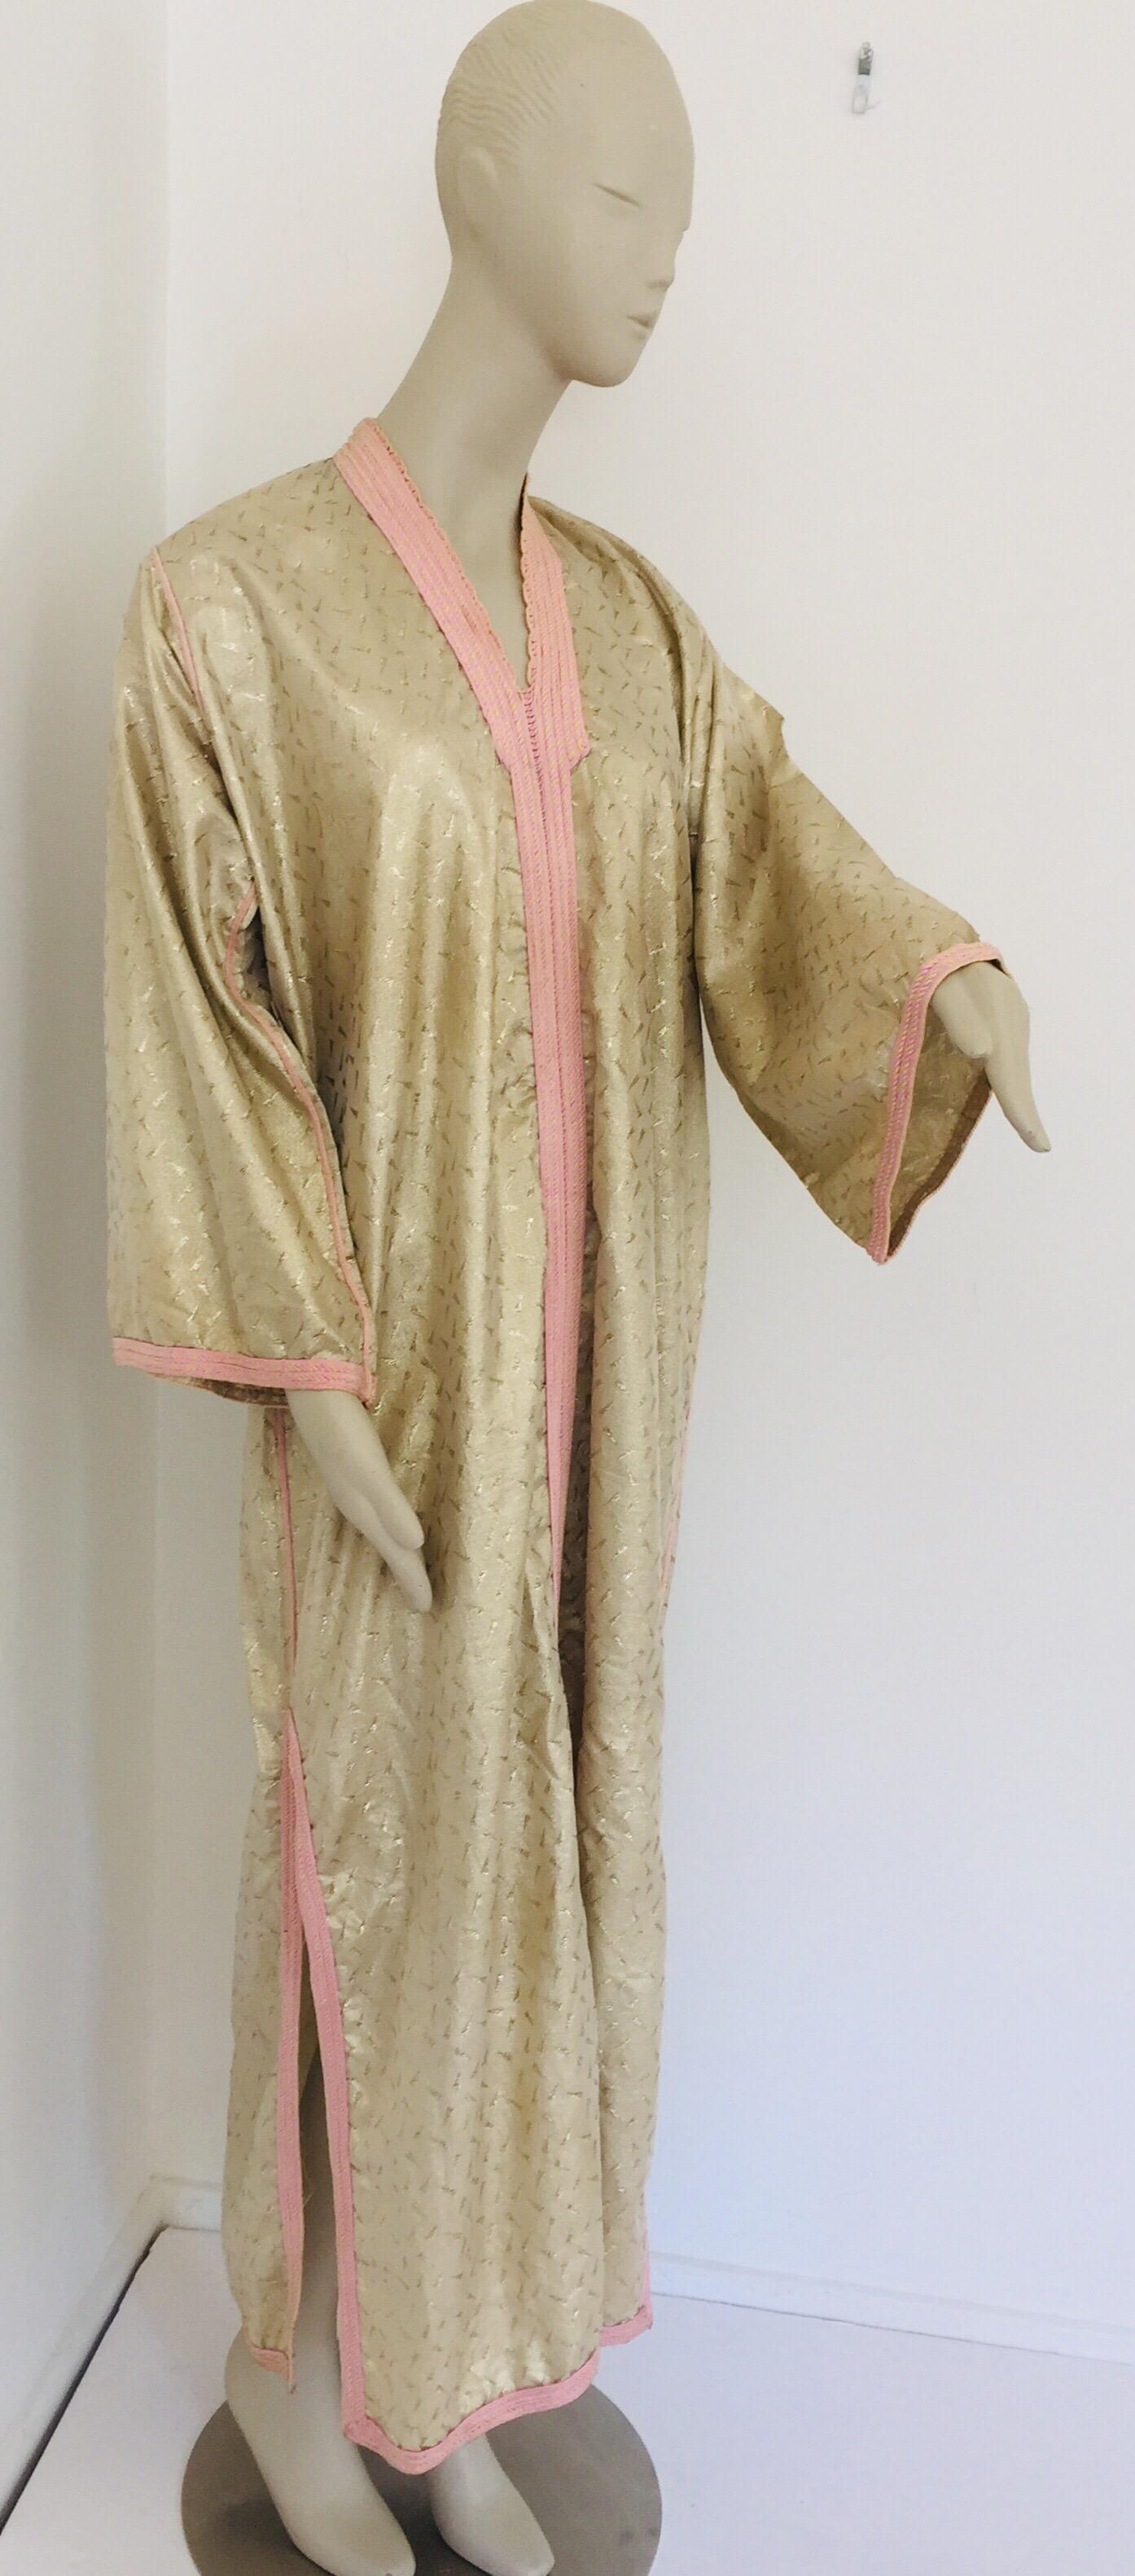 Caftan de soirée ou de soirée marocain en brocart métallique doré avec bordure rose.
Robe caftan exotique vintage faite à la main en brocart métallique des années 1970 provenant d'Afrique du Nord, du Maroc.
La lumineuse robe longue caftan marocaine